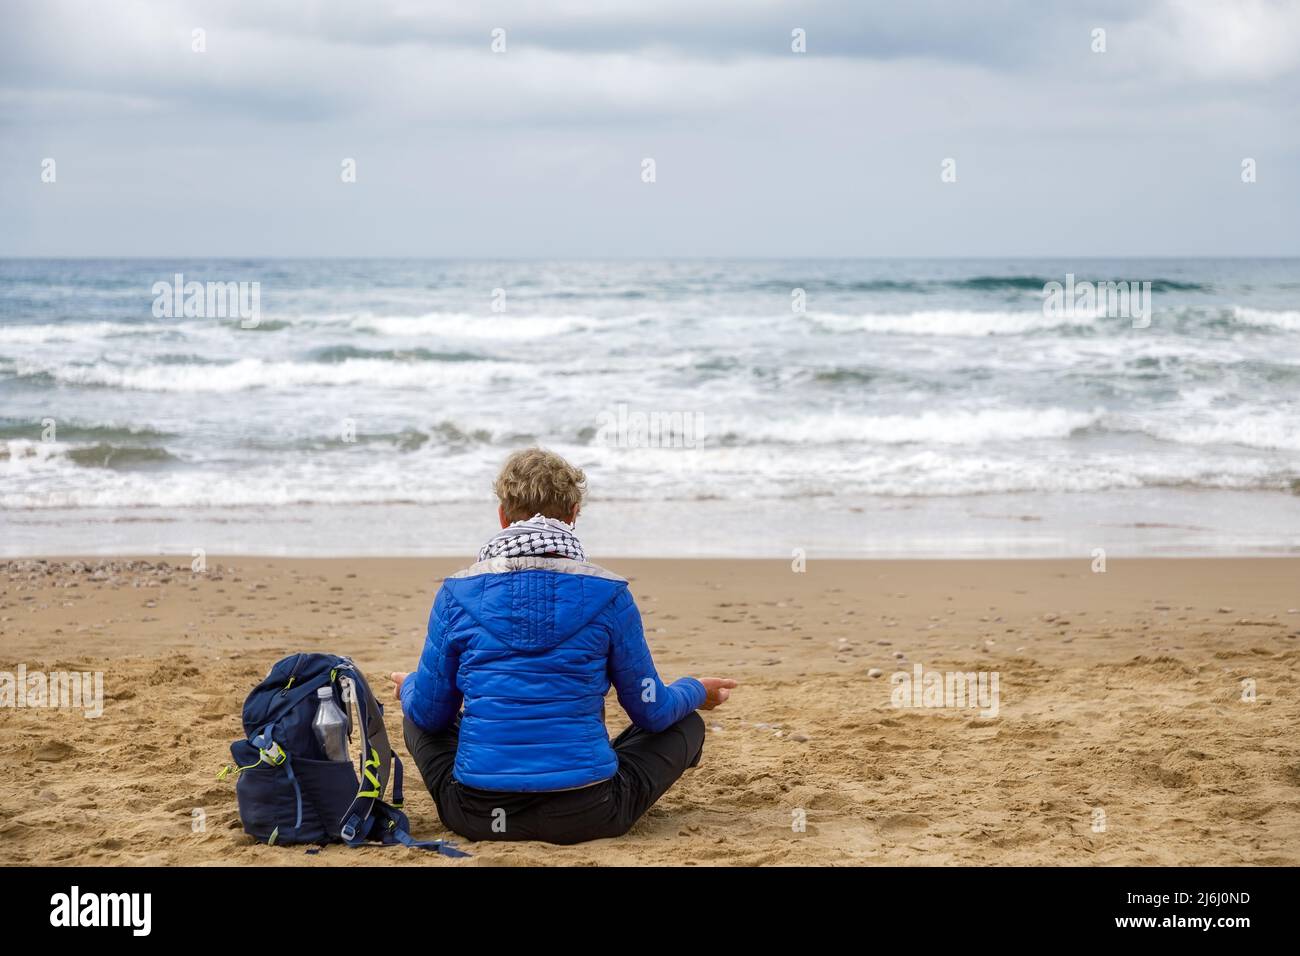 Frau, die am Strand sitzt und Meditation übt und den Horizont des stürmischen Meeres beobachtet. Konzept von Spiritualität, Meditation und innerem Wachstum. Stockfoto